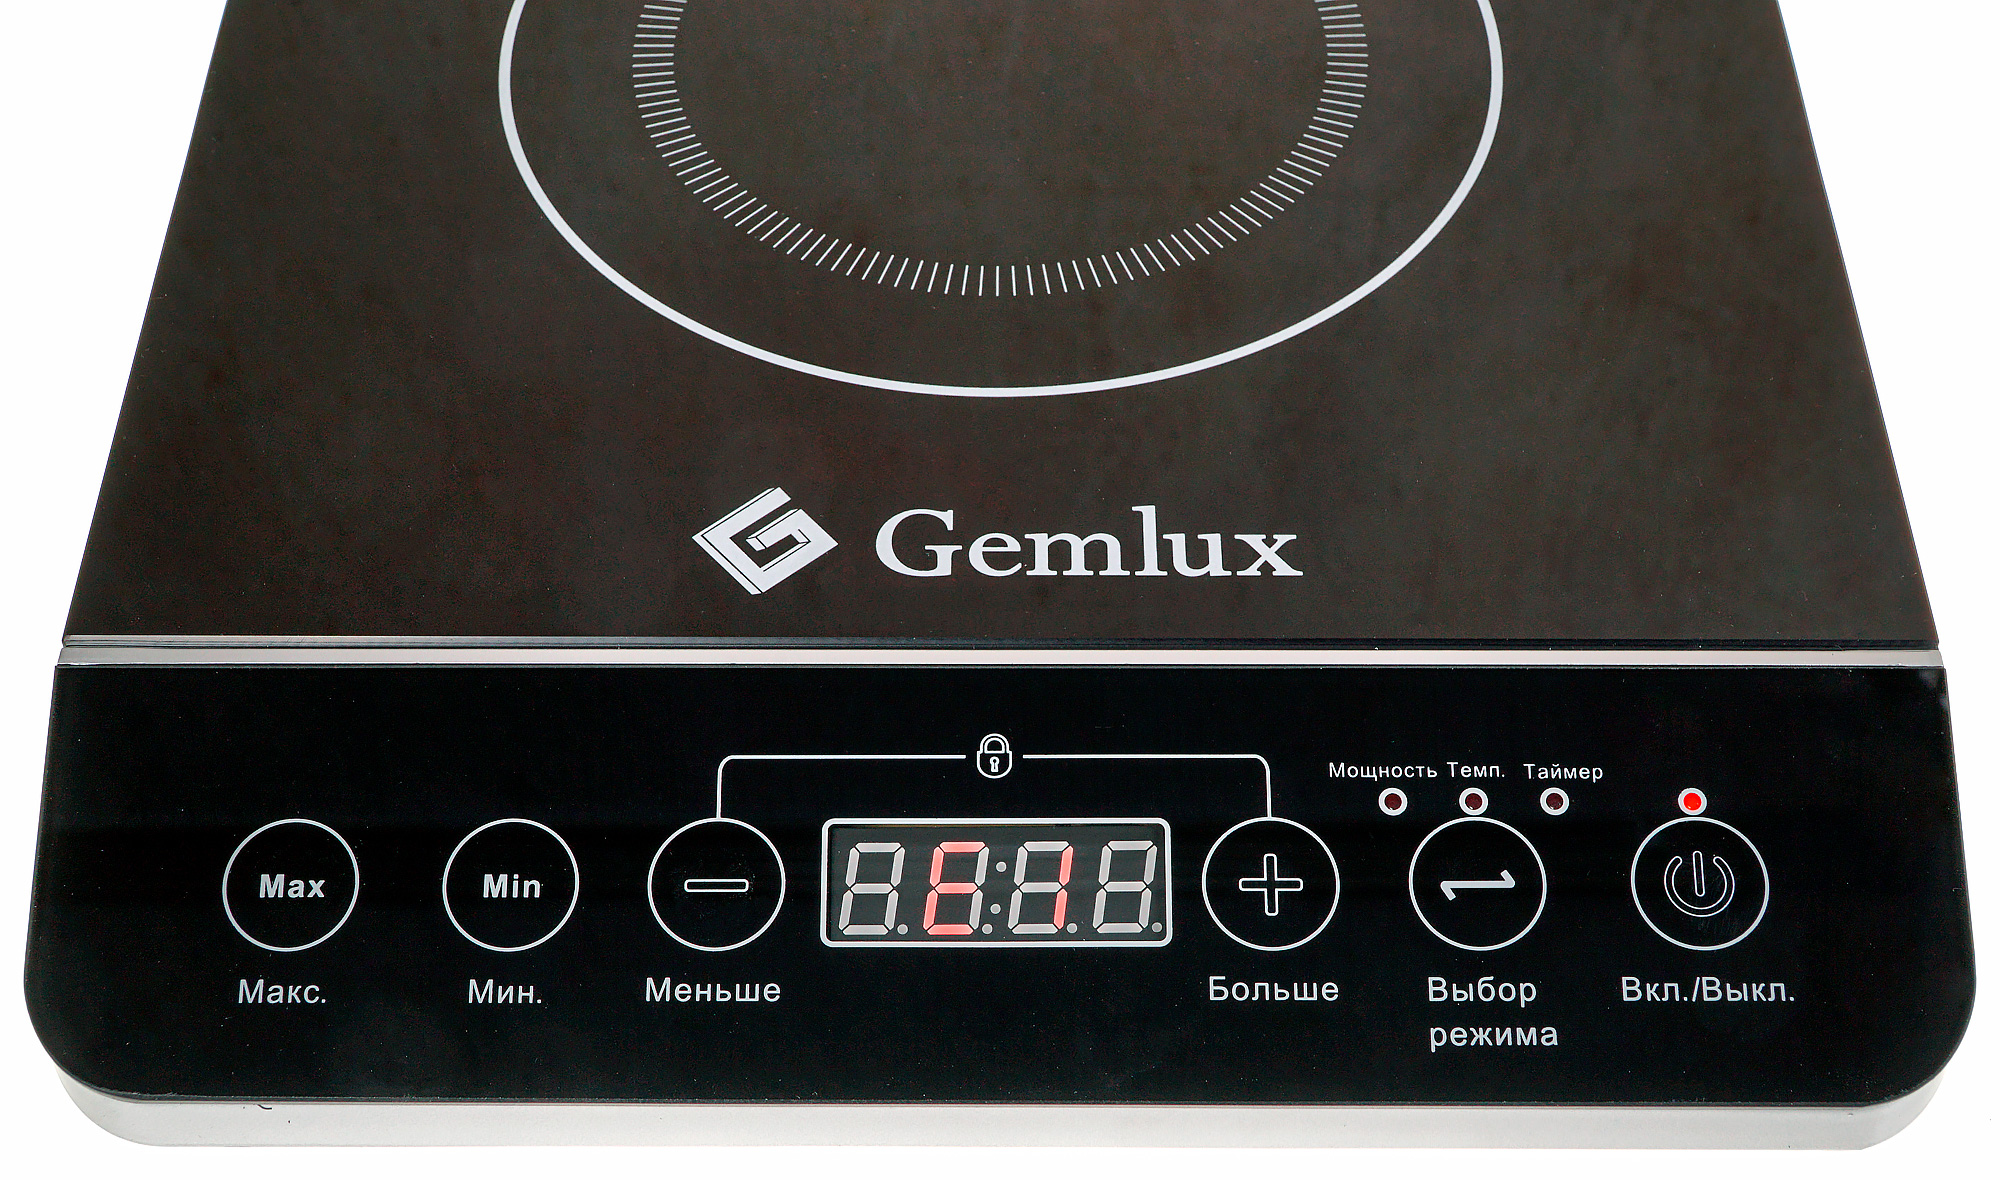 Где купить индукционную. Плитка индукционная Gemlux gl-ip20a. Индукционная плита BT-350t. Электрическая плита Gemlux gl-ip20a. Индукционная плита Gemlux 3.5 КВТ.